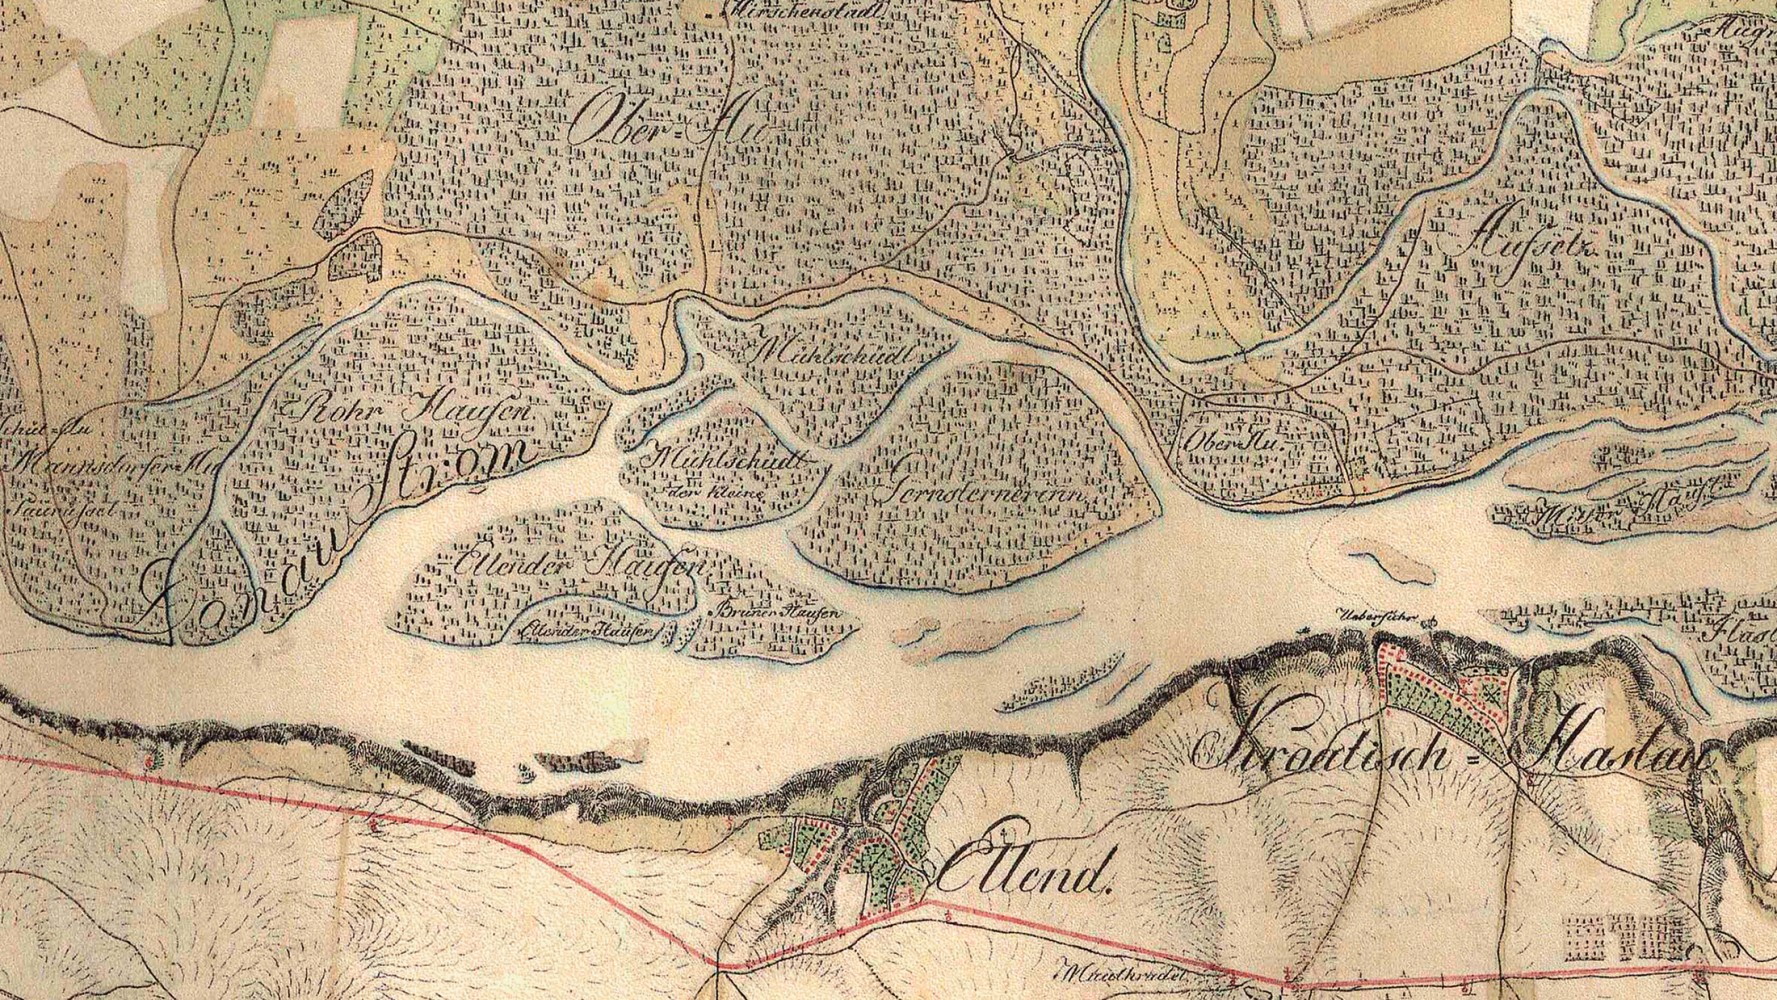 Historische Karte der verzweigten Donaulandschaft